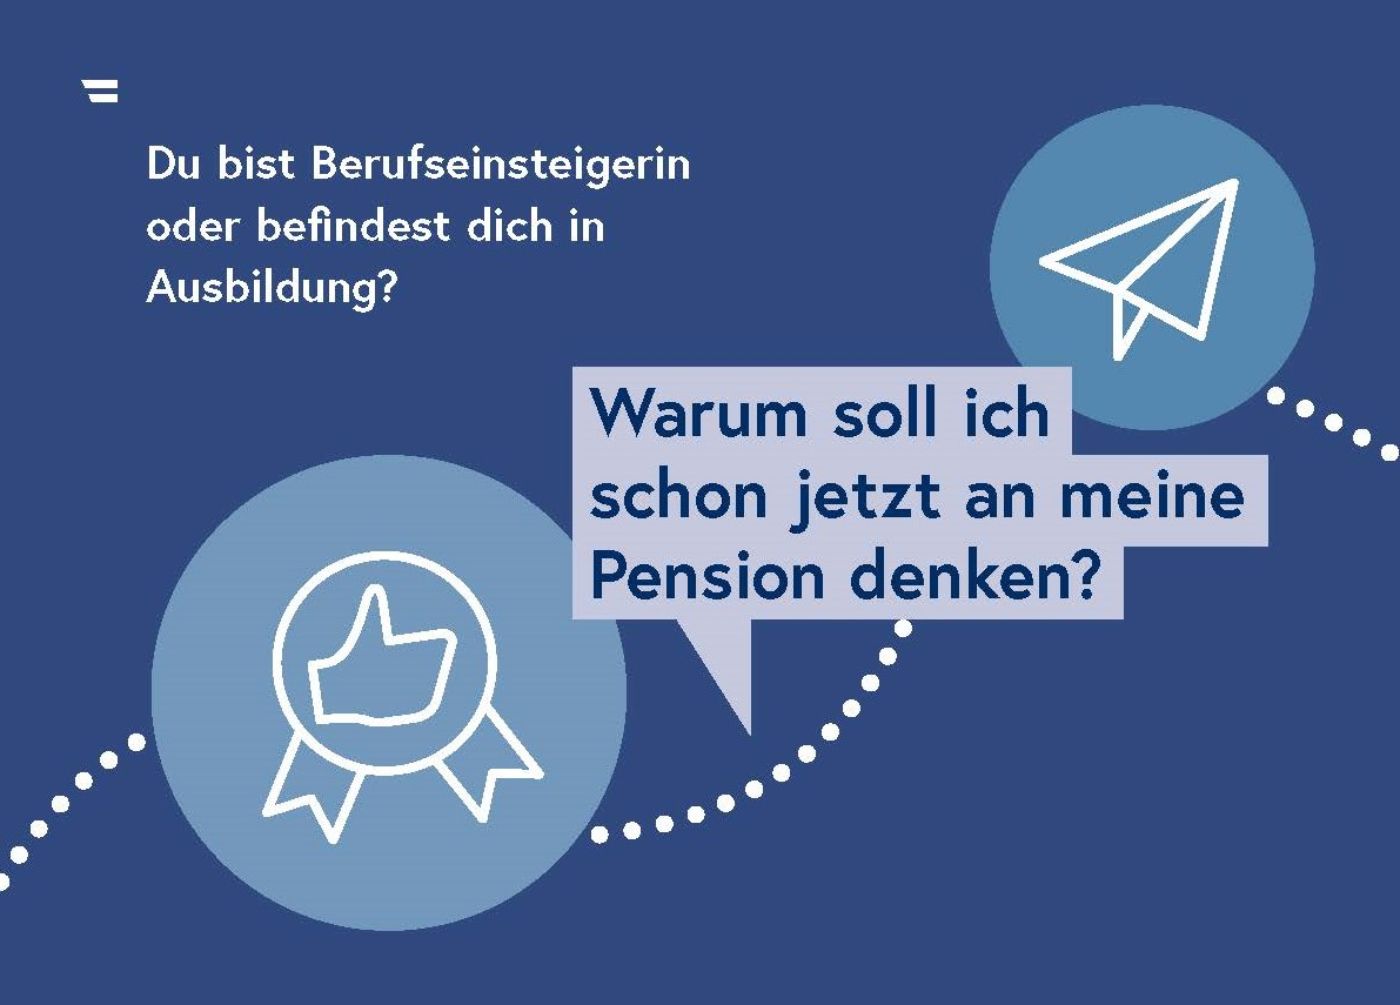 Postkarte "Frauen und Pensionen": Du bist Berufseinsteigerin oder befindest dich in Ausbildung?